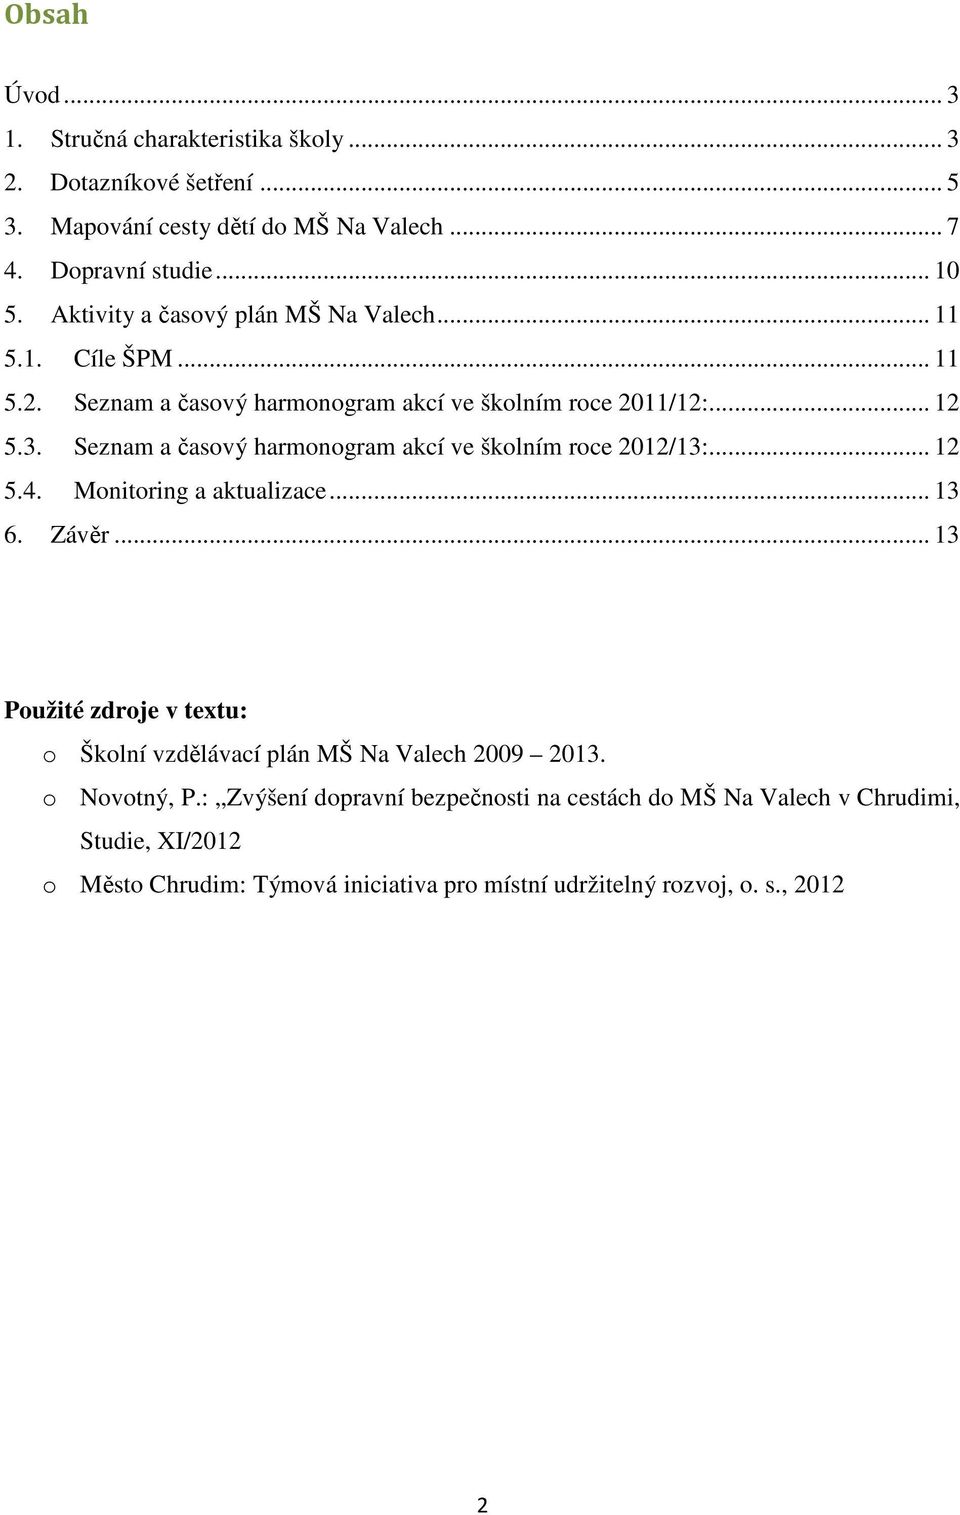 Seznam a časový harmonogram akcí ve školním roce 2012/13:... 12 5.4. Monitoring a aktualizace... 13 6. Závěr.